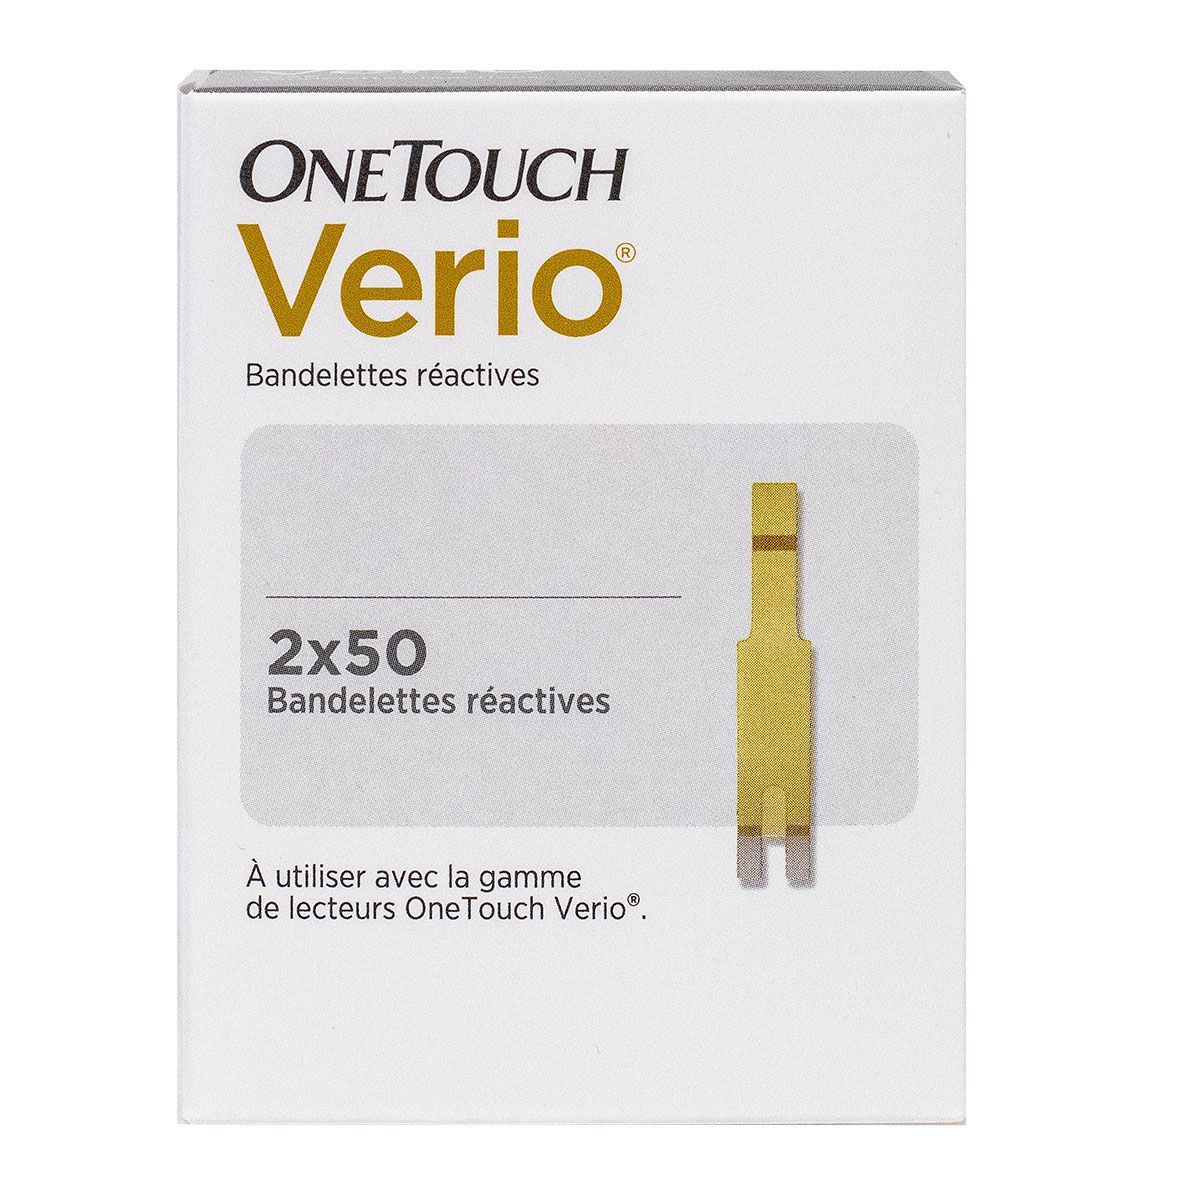 One Touch Verio 100 bandelettes réactives autosurveillance glycémie